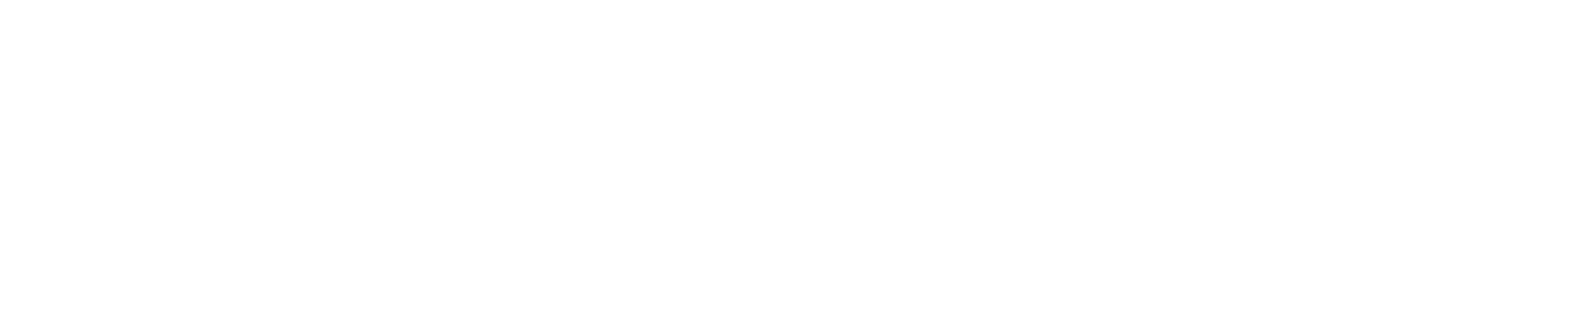 UniFirst Logo groß für dunkle Hintergründe (transparentes PNG)